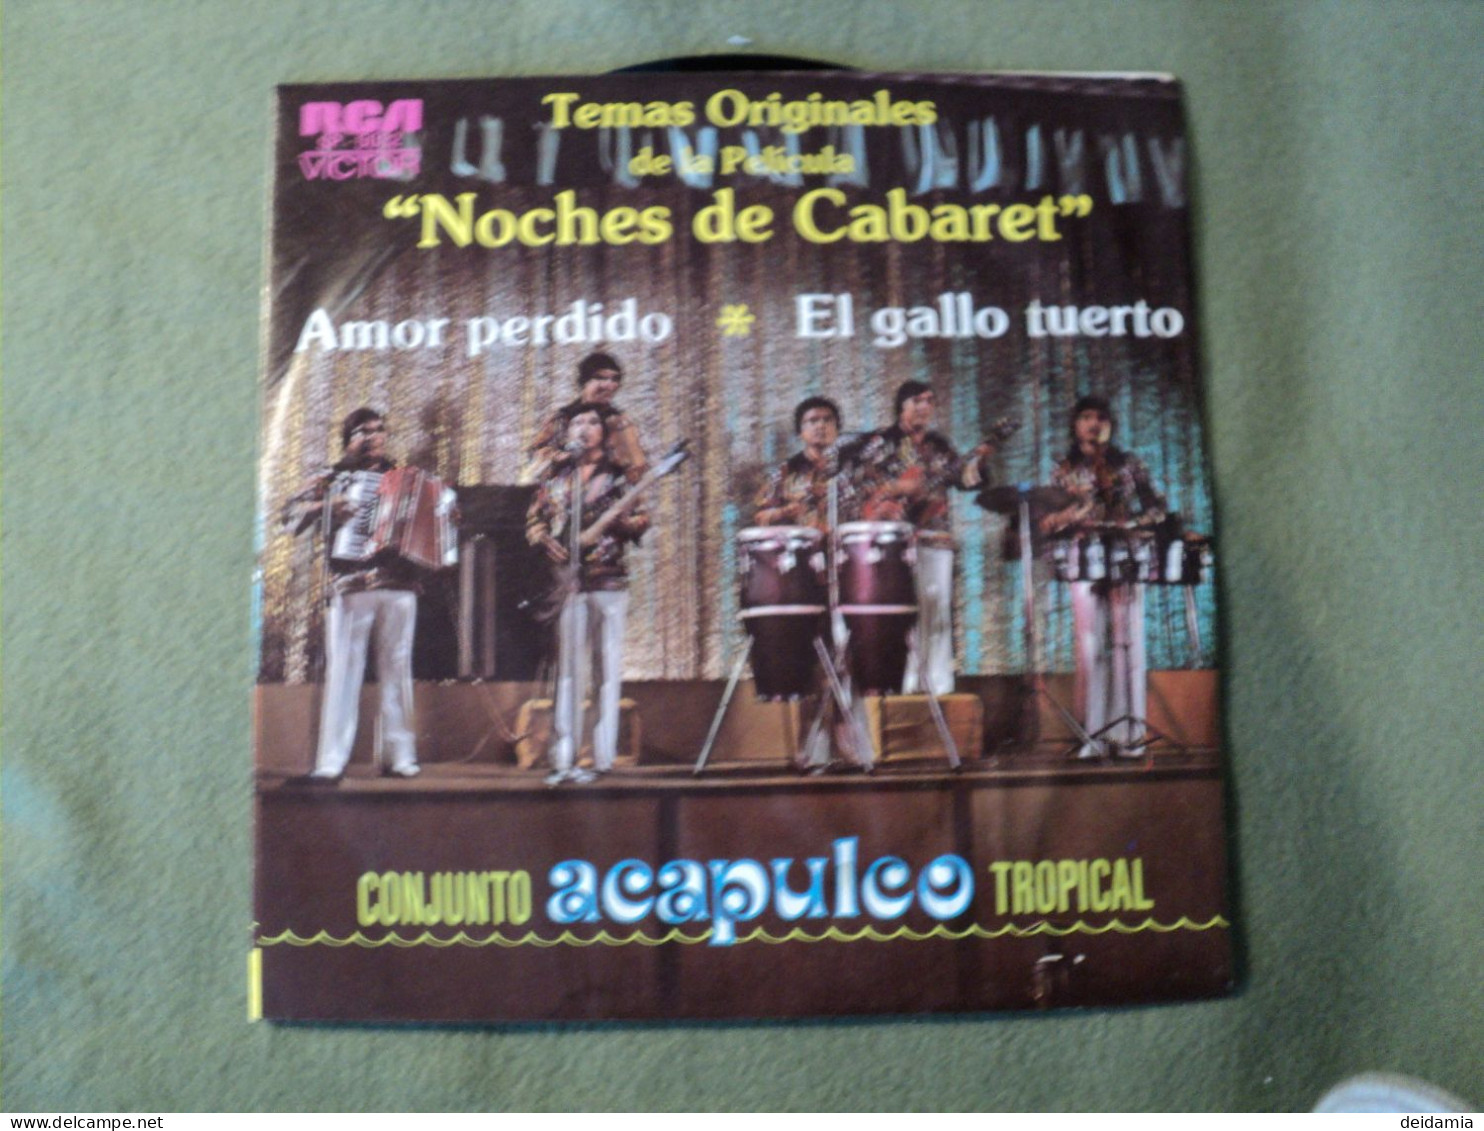 45 TOURS CONJUNTO ACAPULCO TROPICAL. 1978. RCA VICTOR 5032 DU FILM NOCHES DE CABARET. AMOR PERDIDO / EL GALLO TUERTO - Musiche Del Mondo